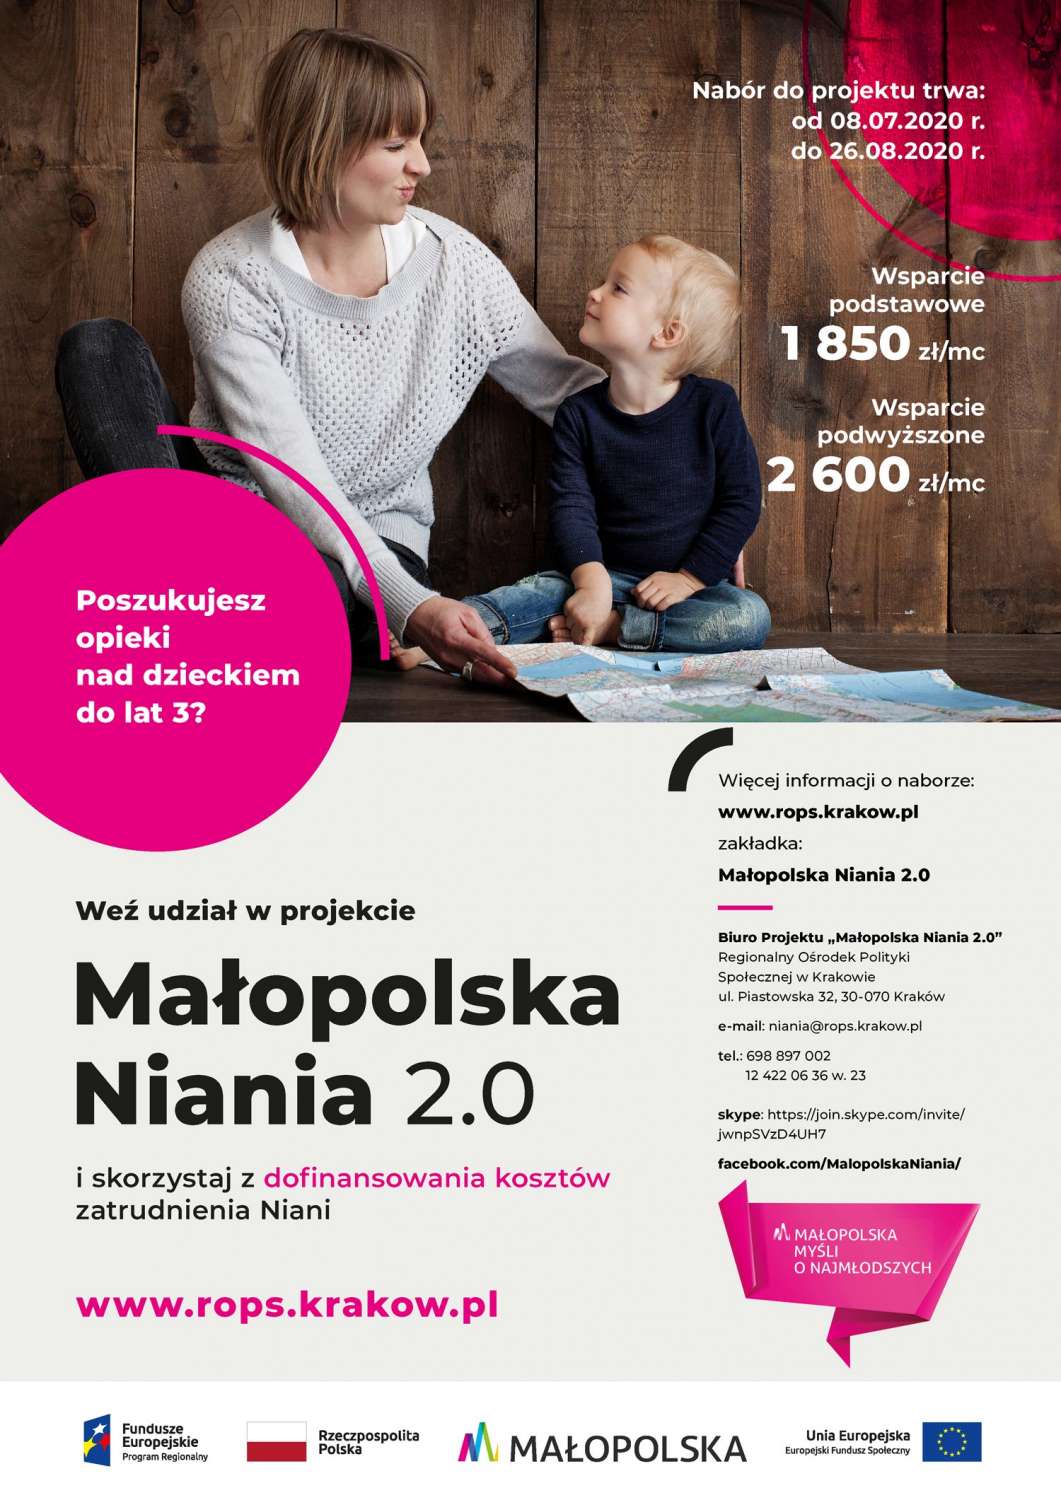 III NABÓR DO PROJEKTU "MAŁOPOLSKA NIANIA 2.0" do 26.08.2020 r.